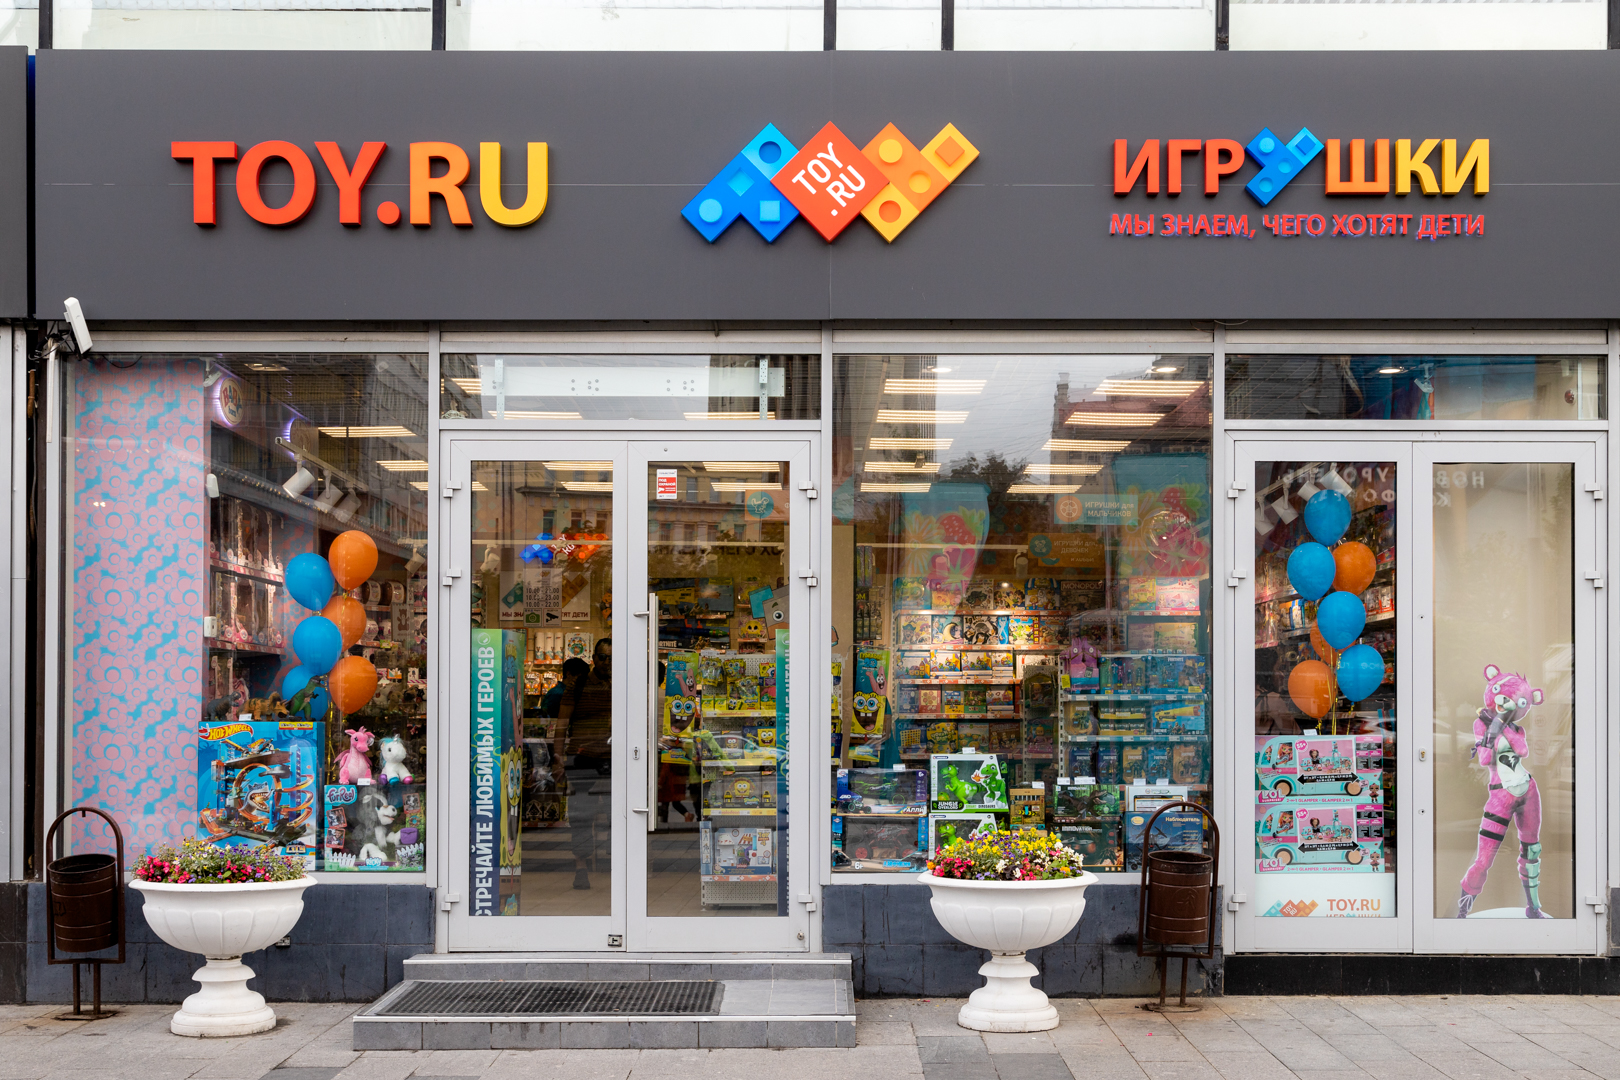 kormstroytorg.ru - интернет-магазин игрушек в Москве